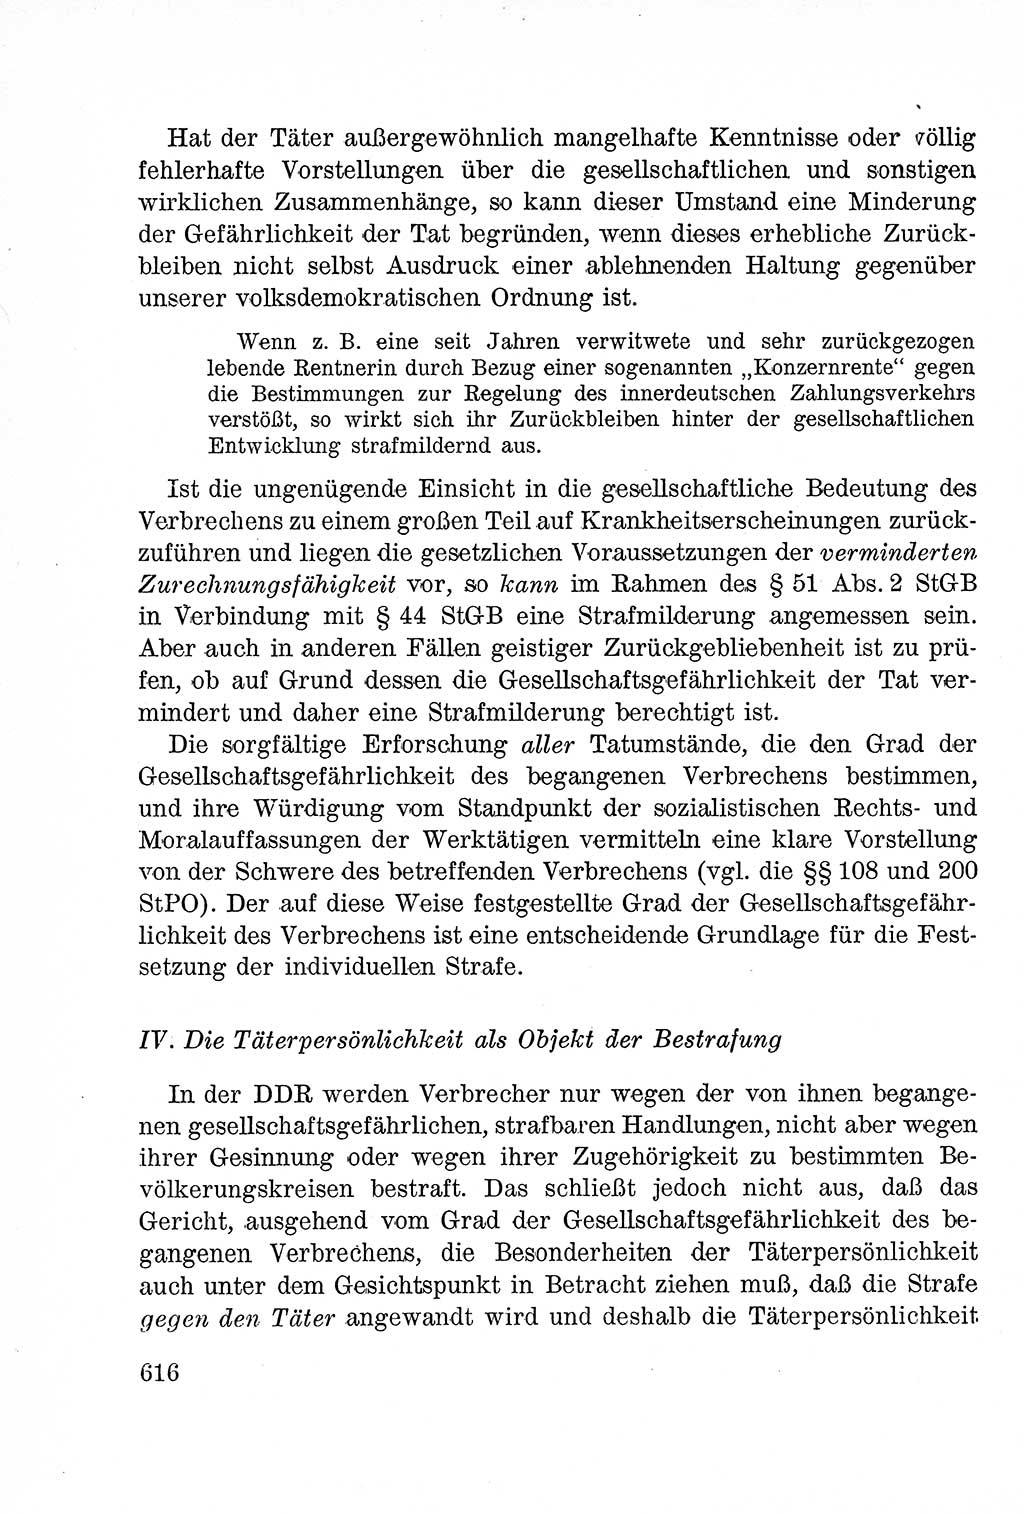 Lehrbuch des Strafrechts der Deutschen Demokratischen Republik (DDR), Allgemeiner Teil 1957, Seite 616 (Lb. Strafr. DDR AT 1957, S. 616)